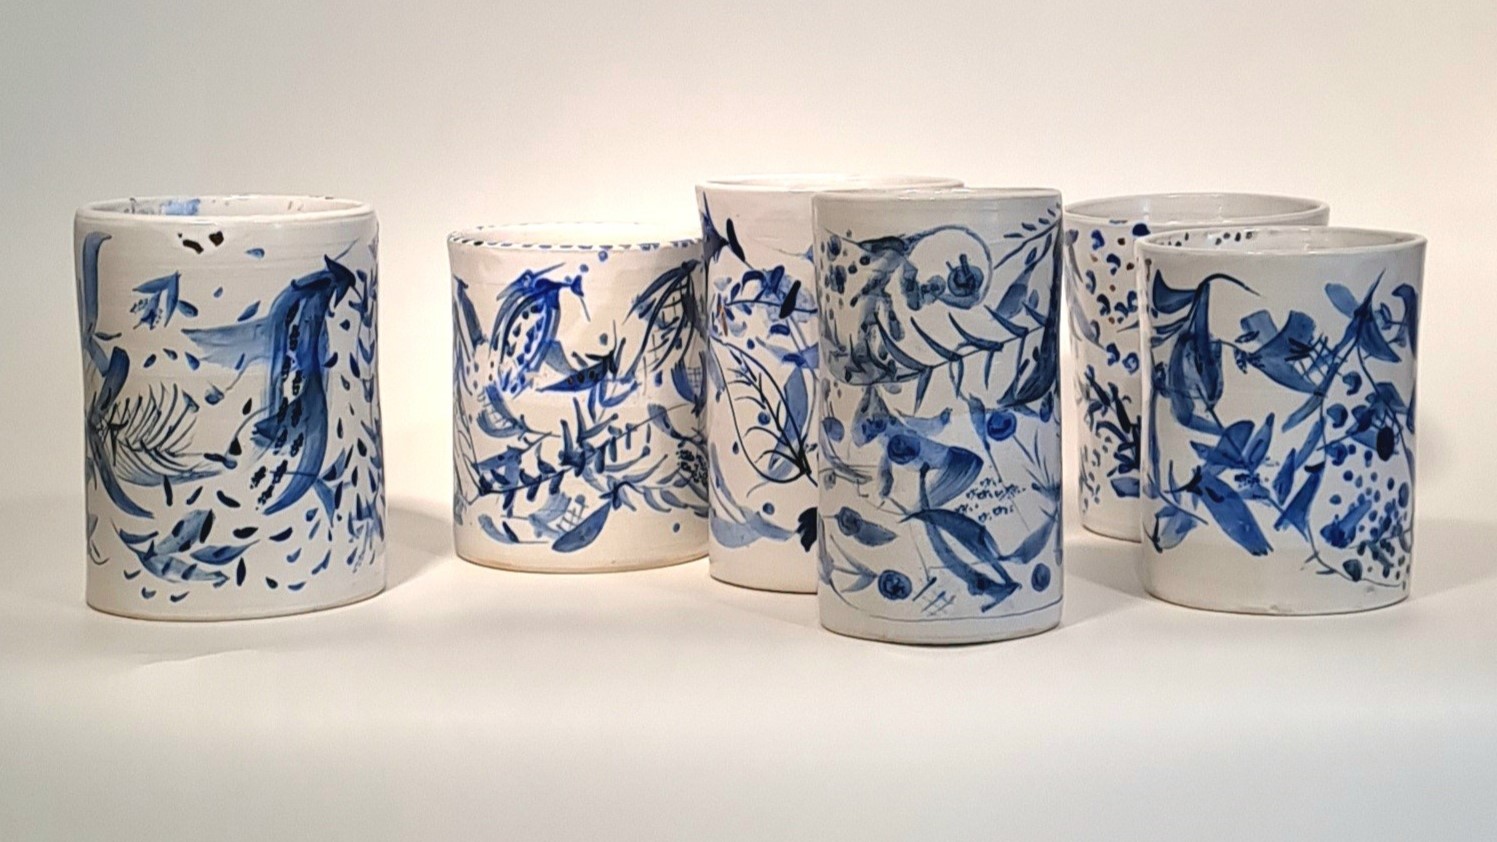 Tidigare utställning: Lasse Frisk - Keramik i flera dimensioner